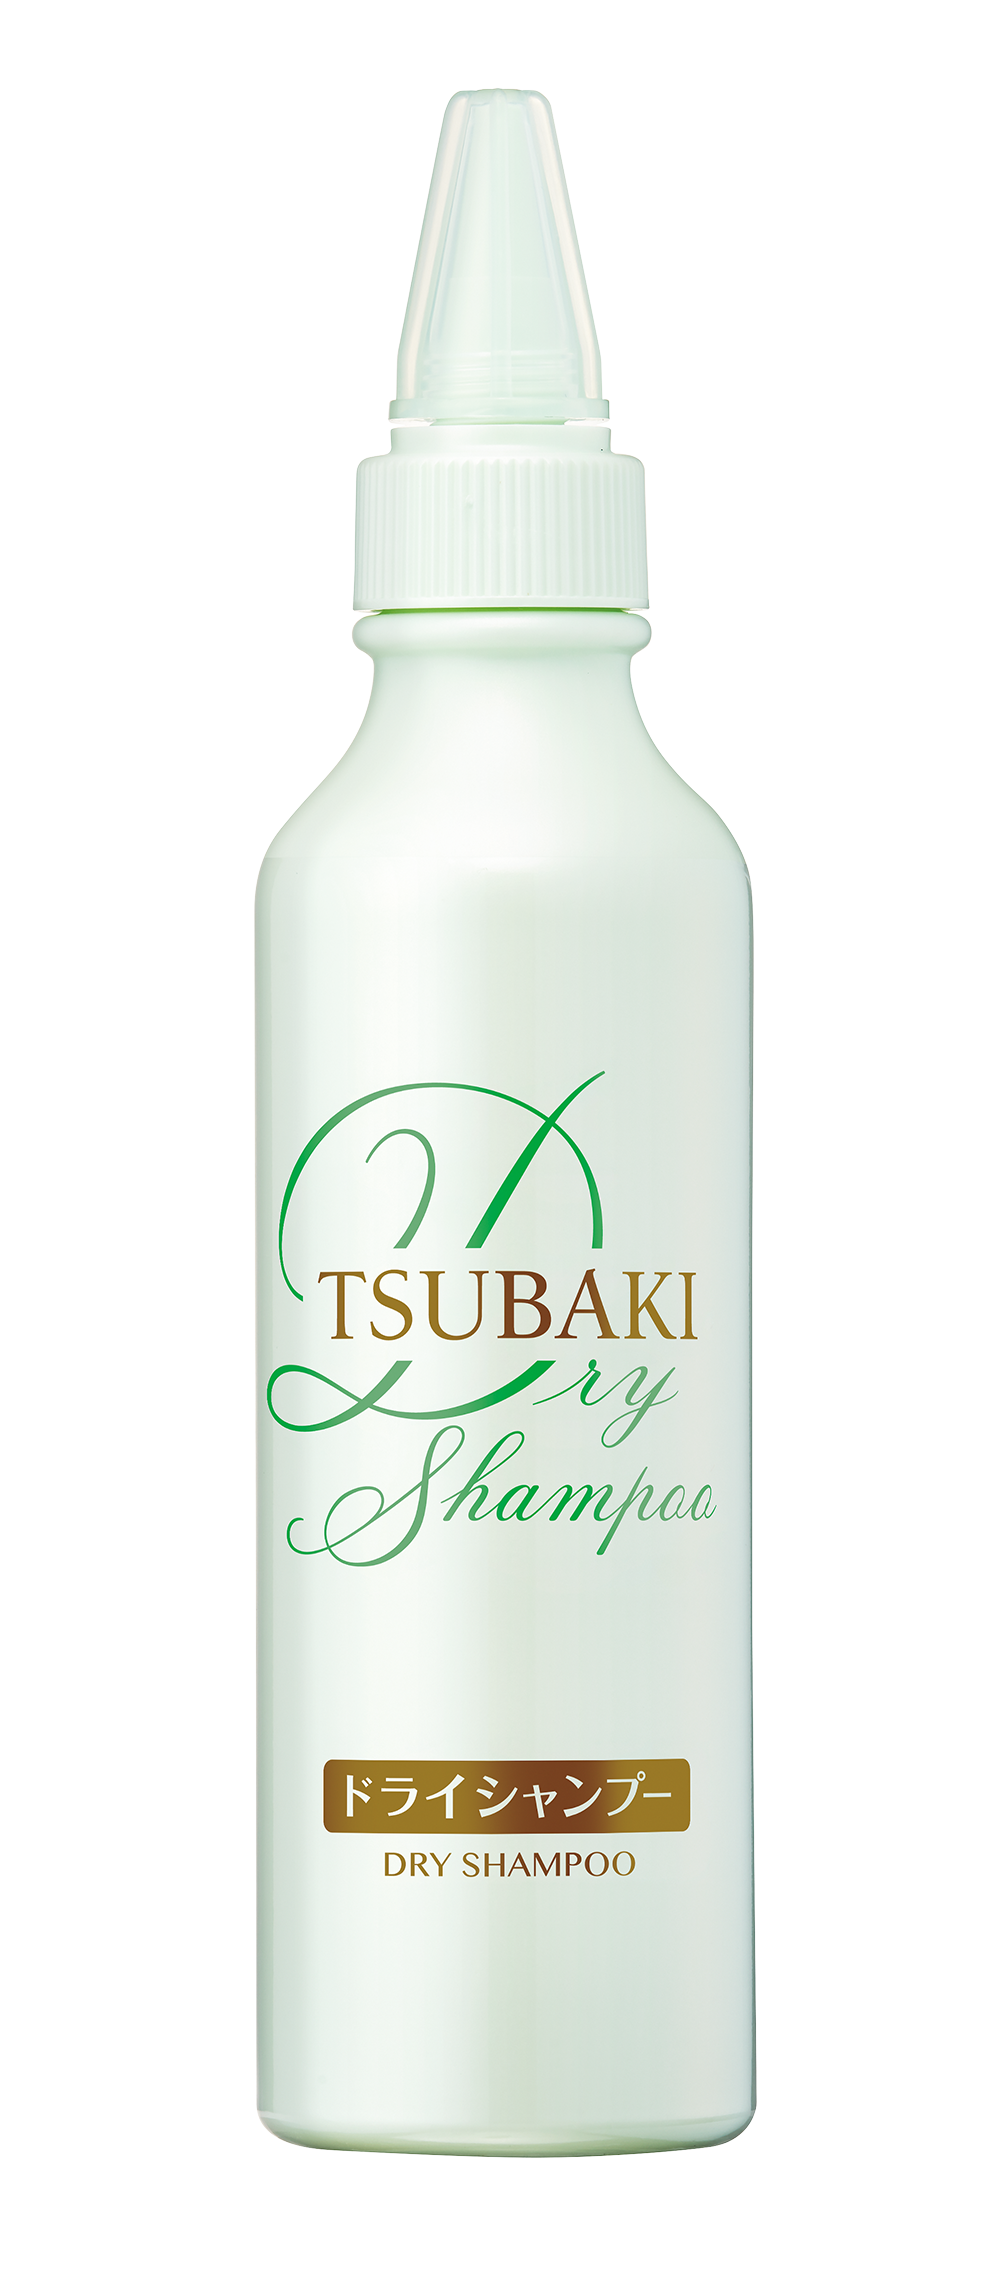 [Mua 1 tặng 1] Mặt Nạ Tóc Cao Cấp Phục Hồi Hư Tổn TSUBAKI (180g) Tặng Dầu gội khô Tsubaki Dry Shampoo 180ml